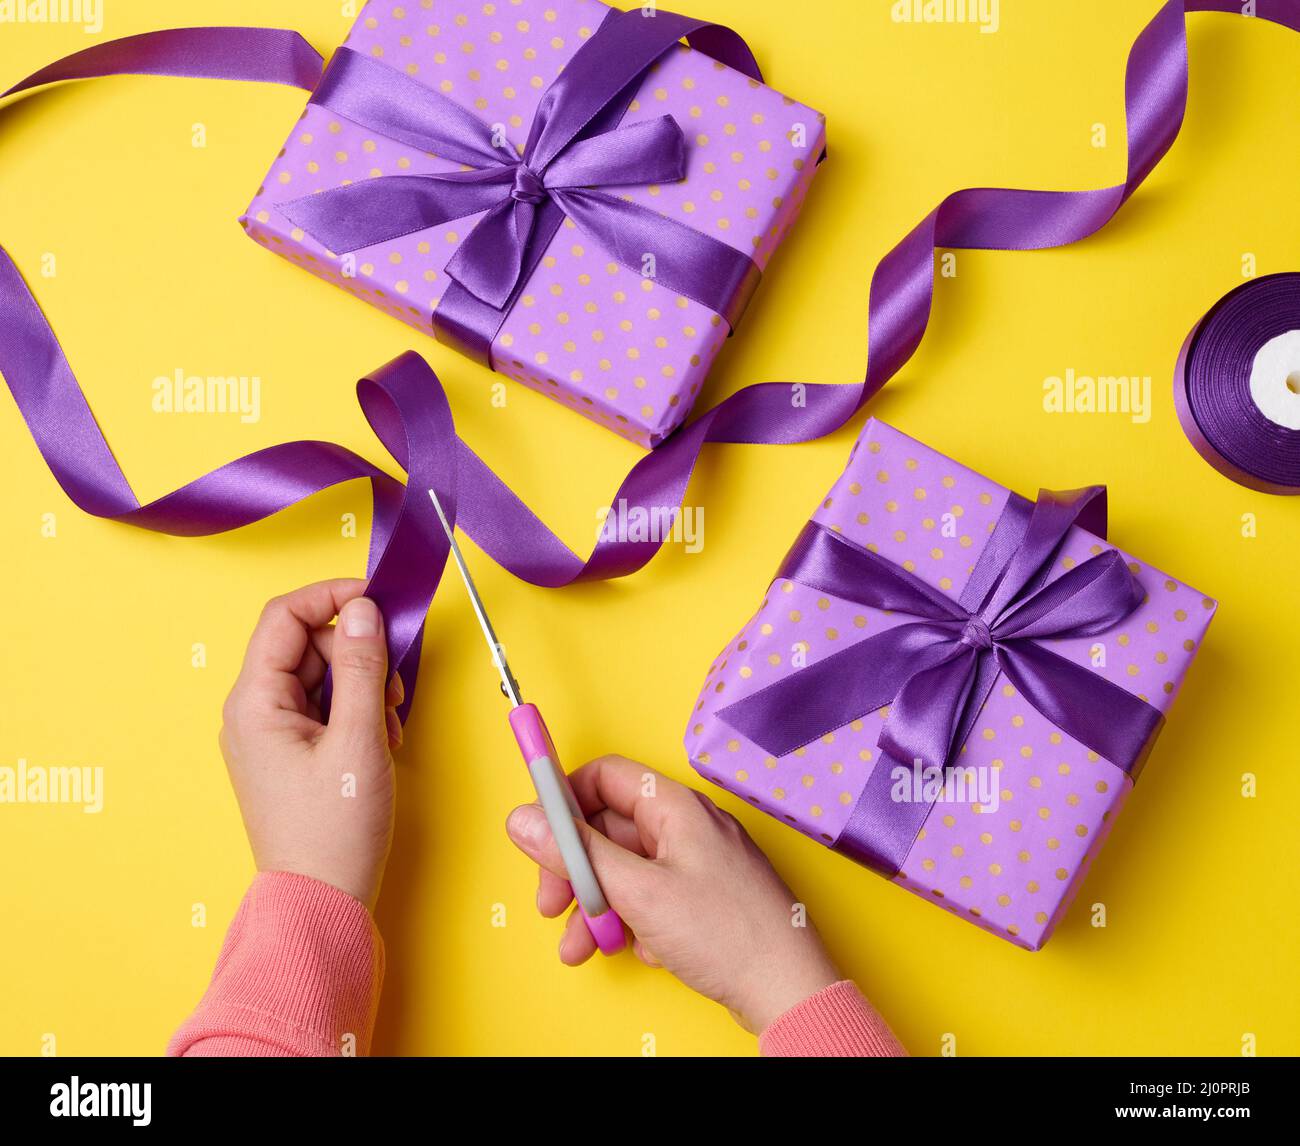 Le mani femminili stanno tagliando un nastro viola di seta con le forbici, vicino alle scatole del regalo. Sfondo giallo, vista dall'alto Foto Stock